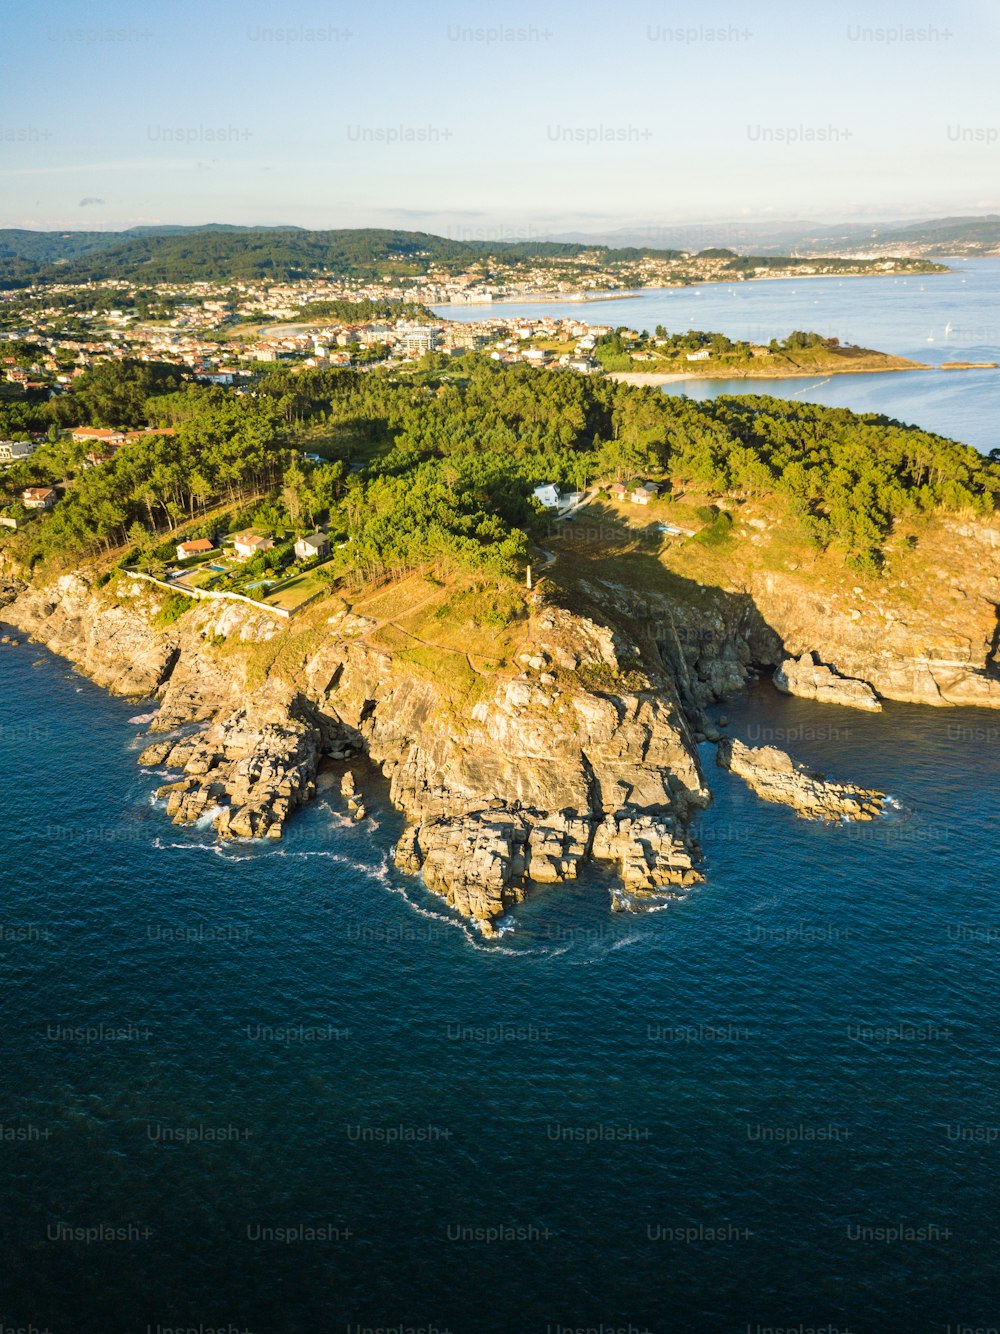 Vue aérienne de la côte galicienne à l’ouverture de la Ria de Pontevedra, où l’océan Atlantique rencontre la terre.